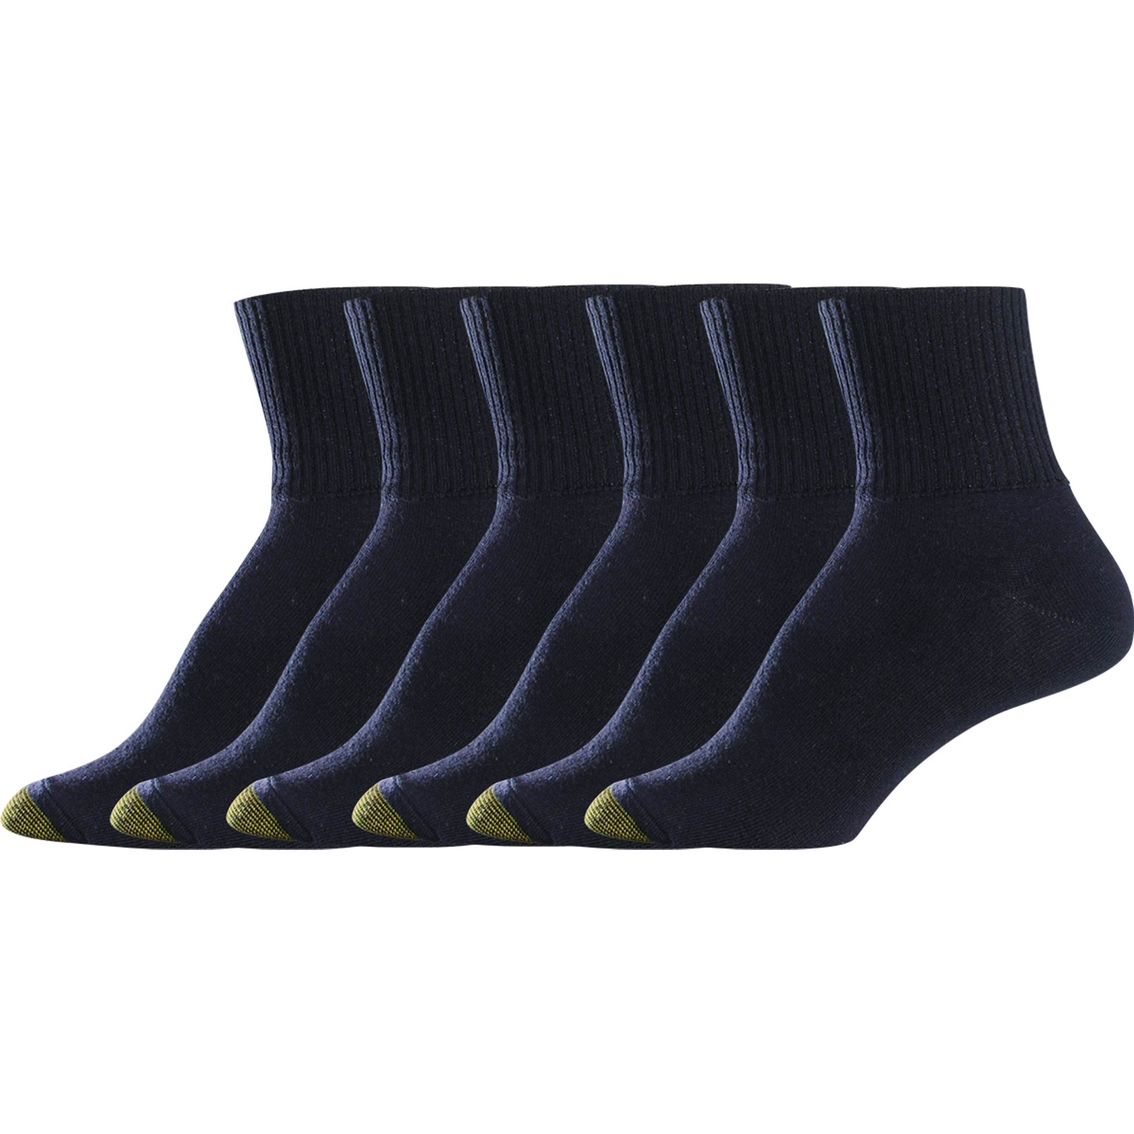 Goldtoe Turn Cuff Socks 6 Pk., Socks & Tights, Clothing & Accessories